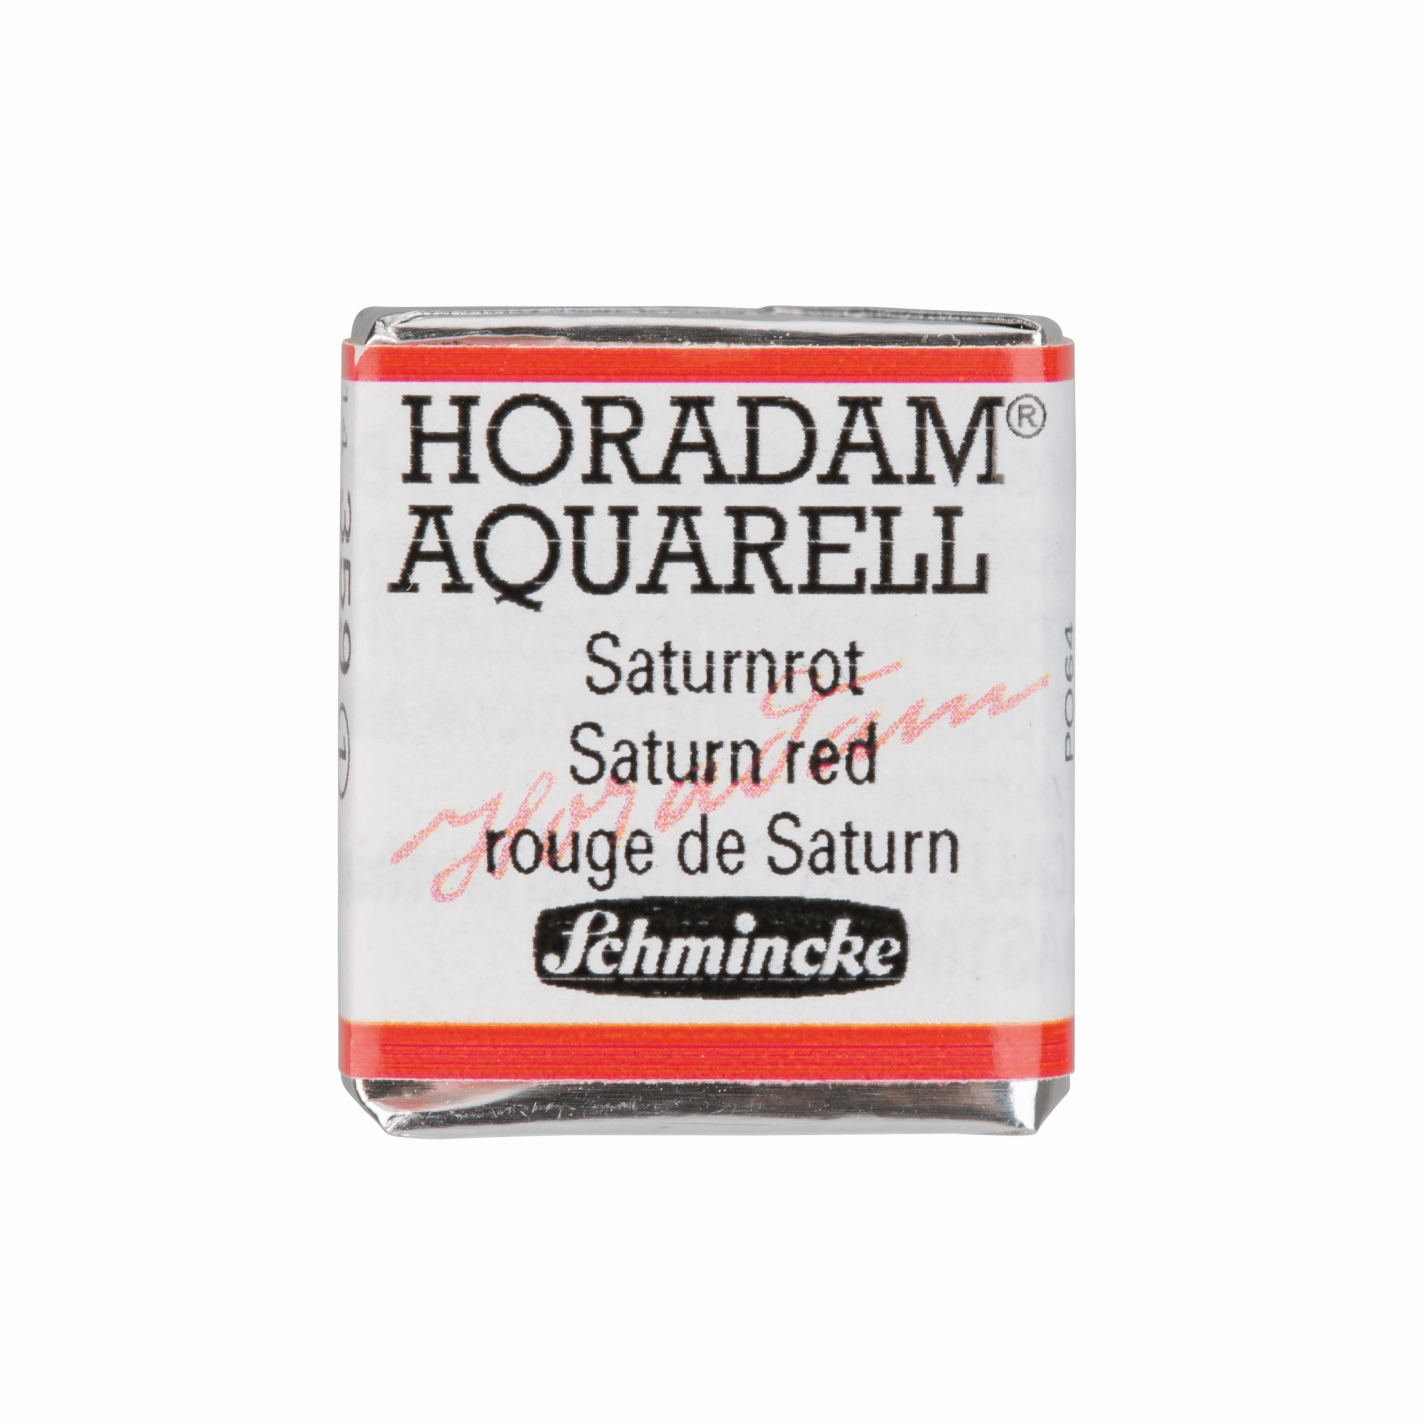 Schmincke Horadam Aquarell pans 1/2 pan Saturn Red